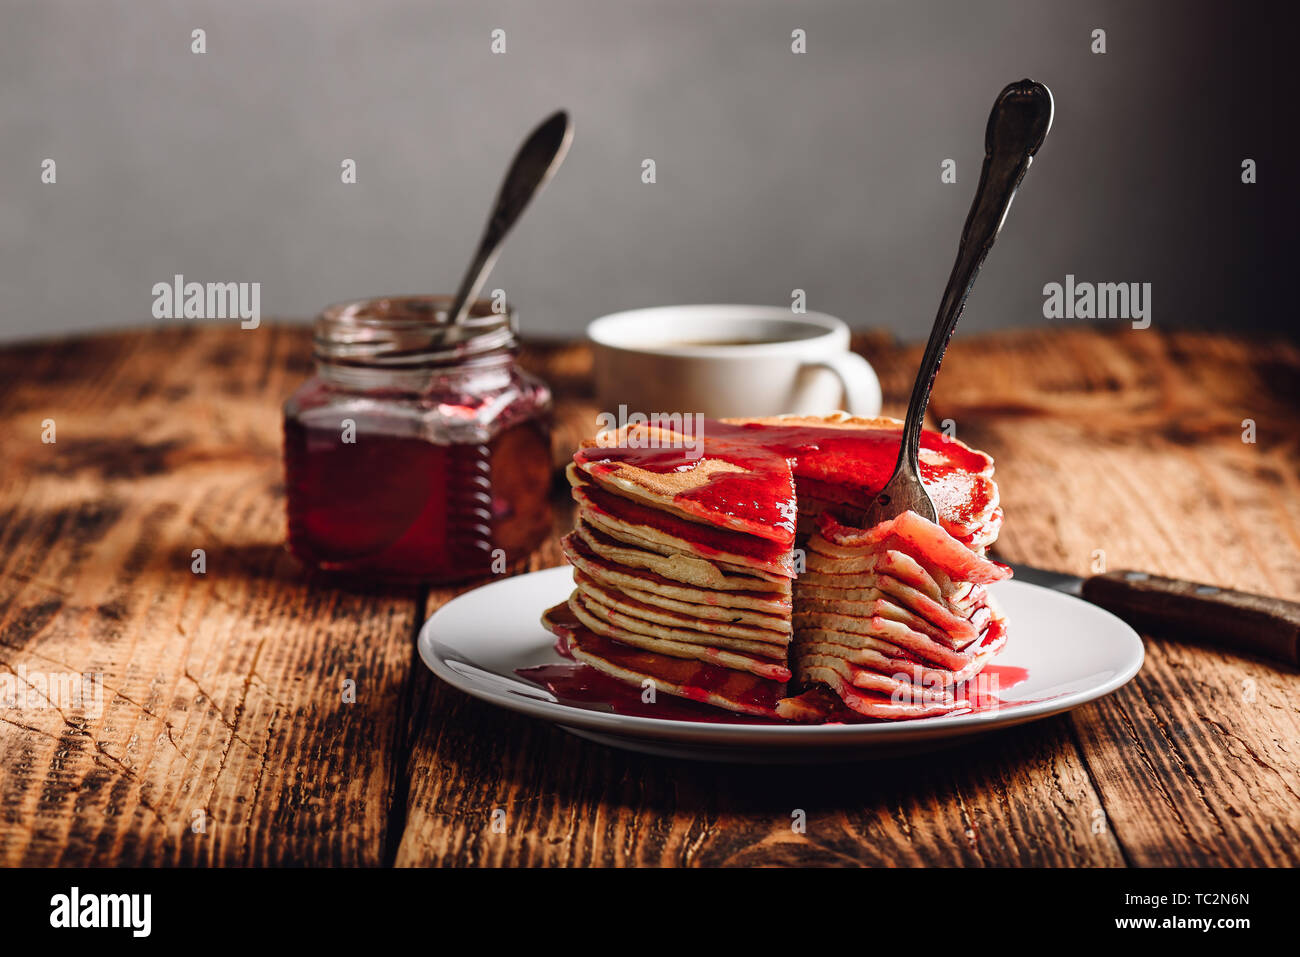 Pila di american pancake con red marmellata di frutti di bosco sulla piastra sulla superficie rustico Foto Stock